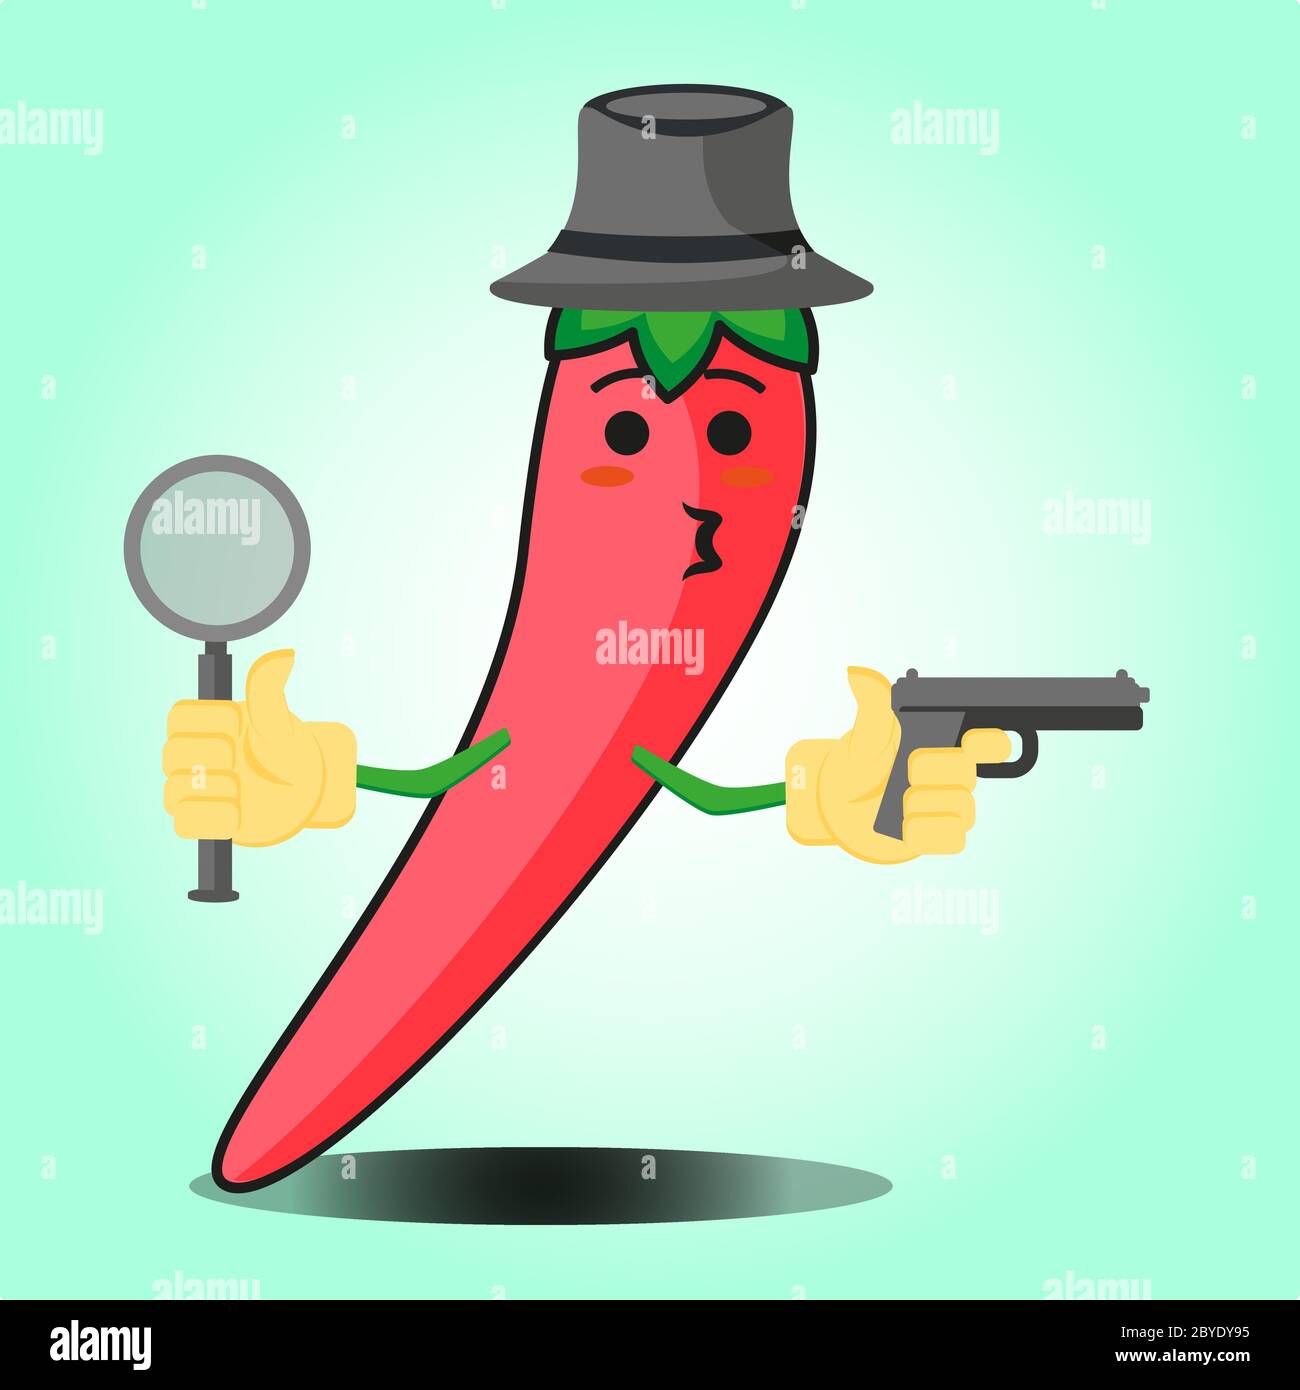 Adorable personnage de dessin animé détective mexicain au piment avec un chapeau et un motif représentant une arme à feu Illustration de Vecteur